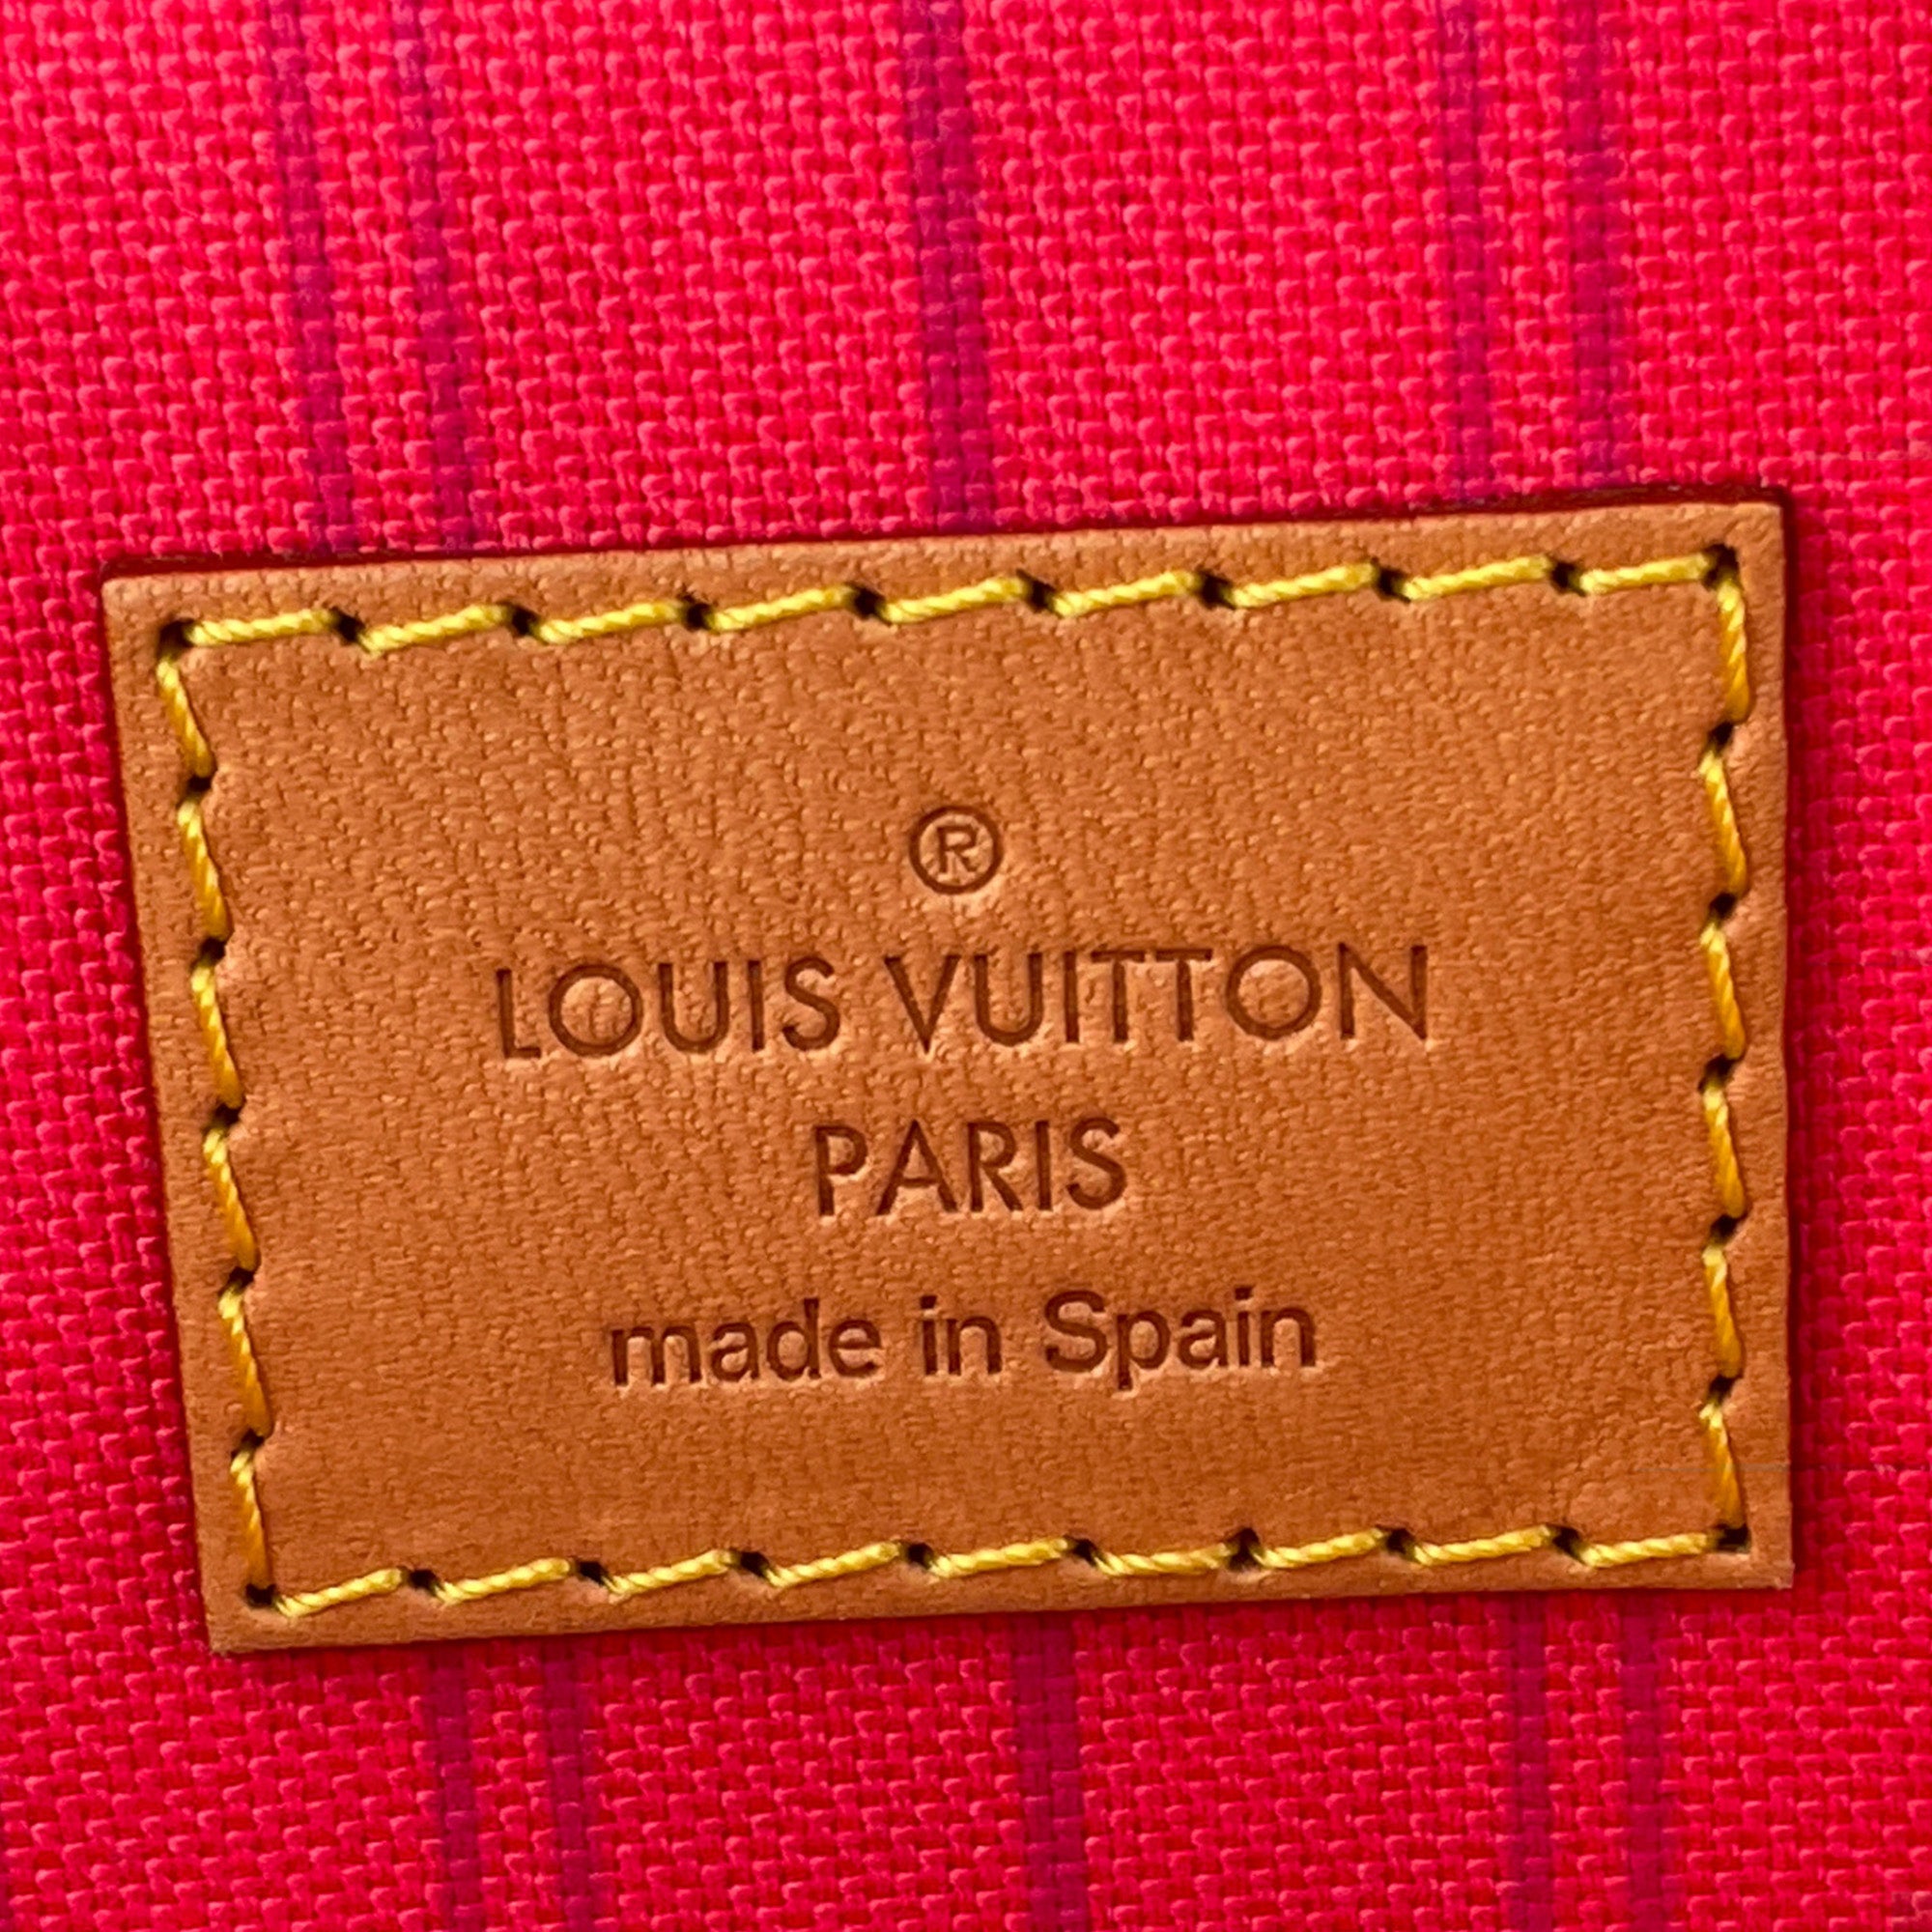 Louis Vuitton Calvi Handbag Damier White 19901617